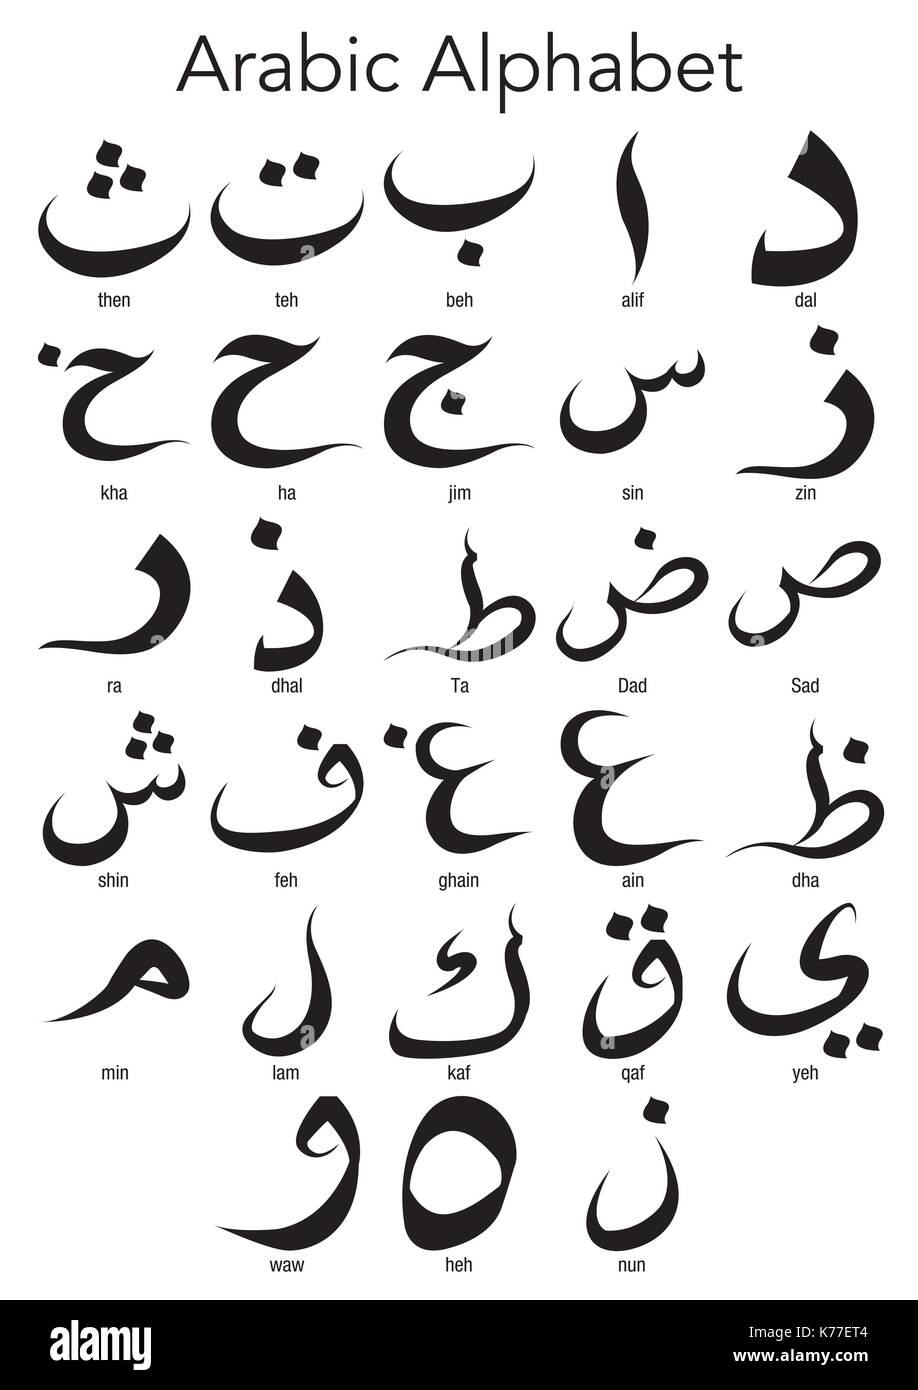 Jeu de l'alphabet arabe sur fond blanc - image vectorielle Illustration de Vecteur